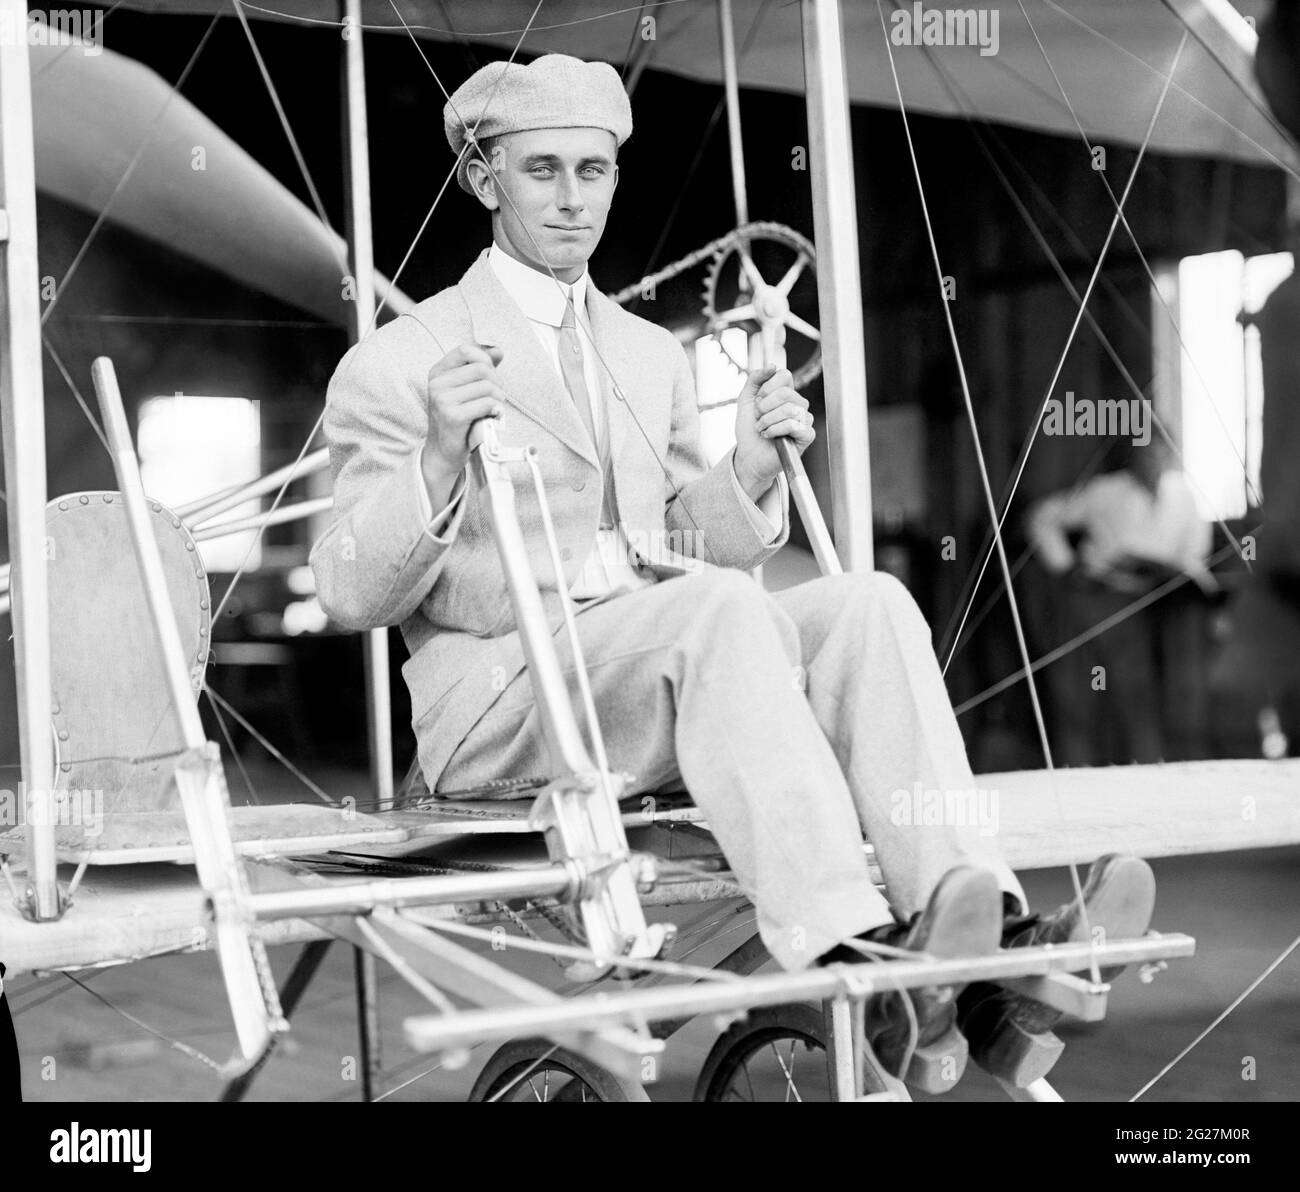 Harry Atwood maniant un avion de frères Wright pendant son entraînement à l'école de pilotage de Wright. Banque D'Images